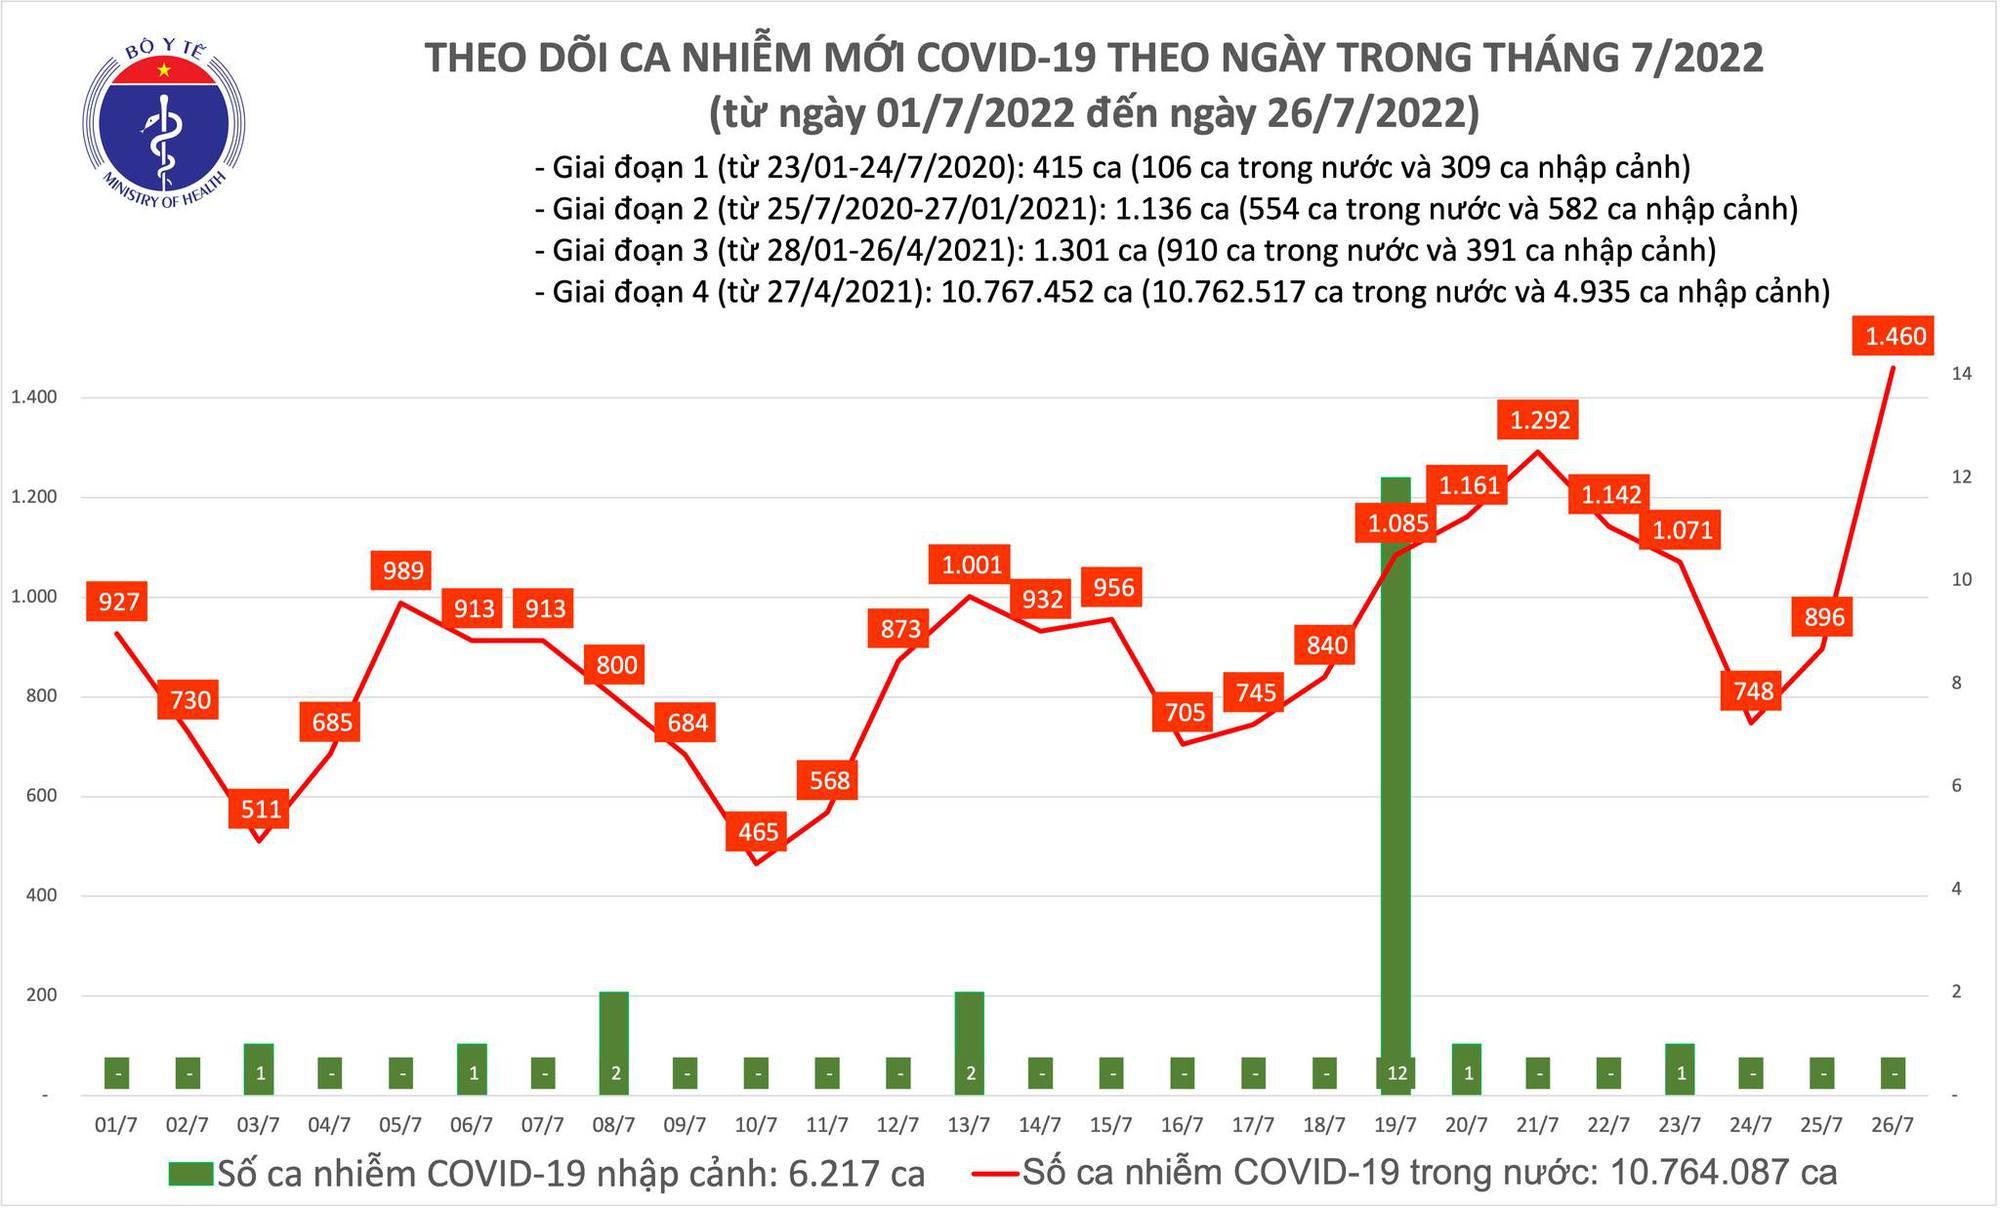 Ngày 26/7: Có 1.460 ca COVID-19 mới, cao nhất trong khoảng 70 ngày qua - Ảnh 1.